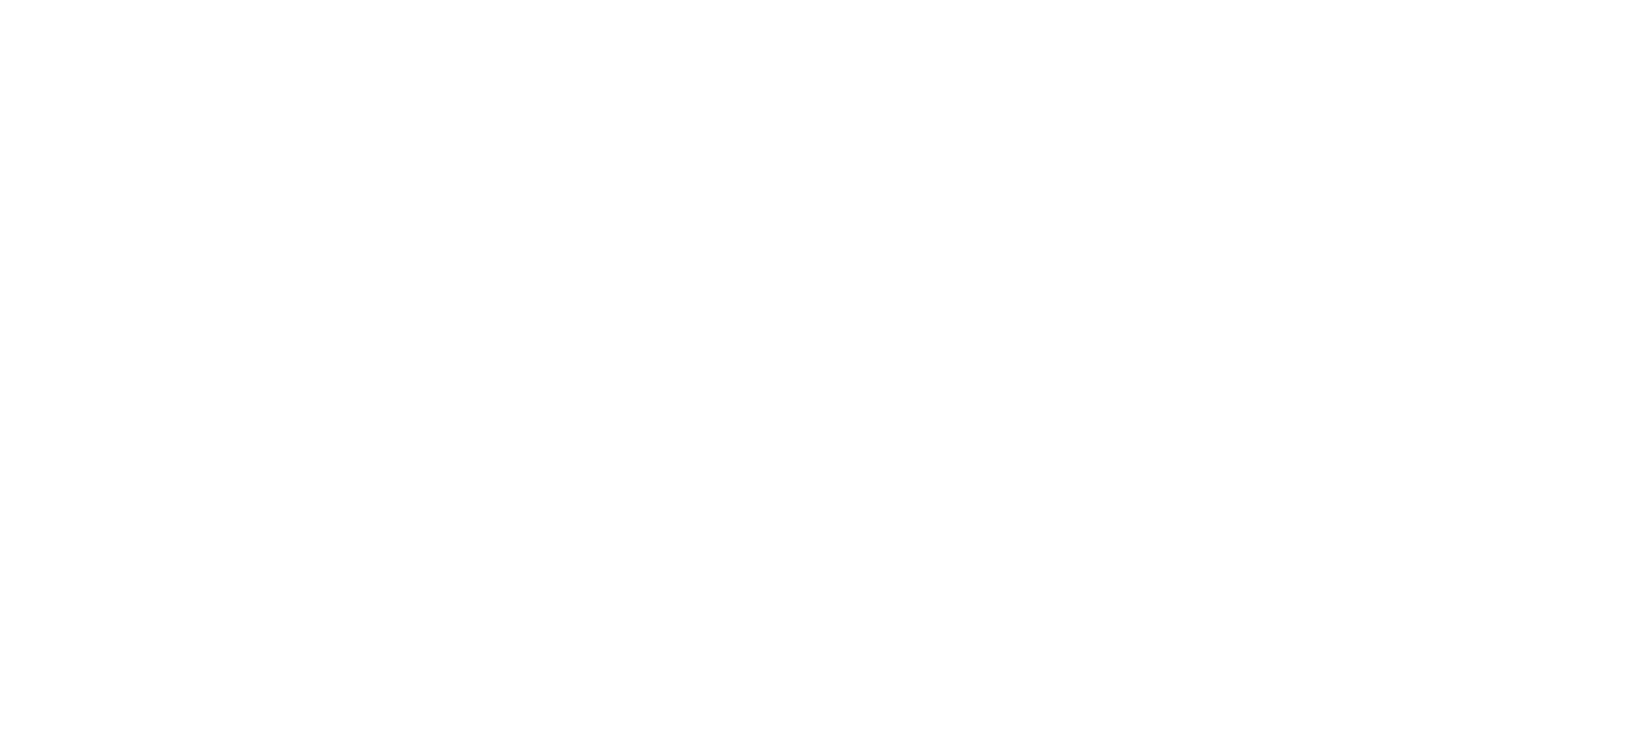 中世ヨーロッパの魔女の宮殿をコンセプトとしたダークでノスタルジックな世界観を表現したコンセプトフォトスタジオ